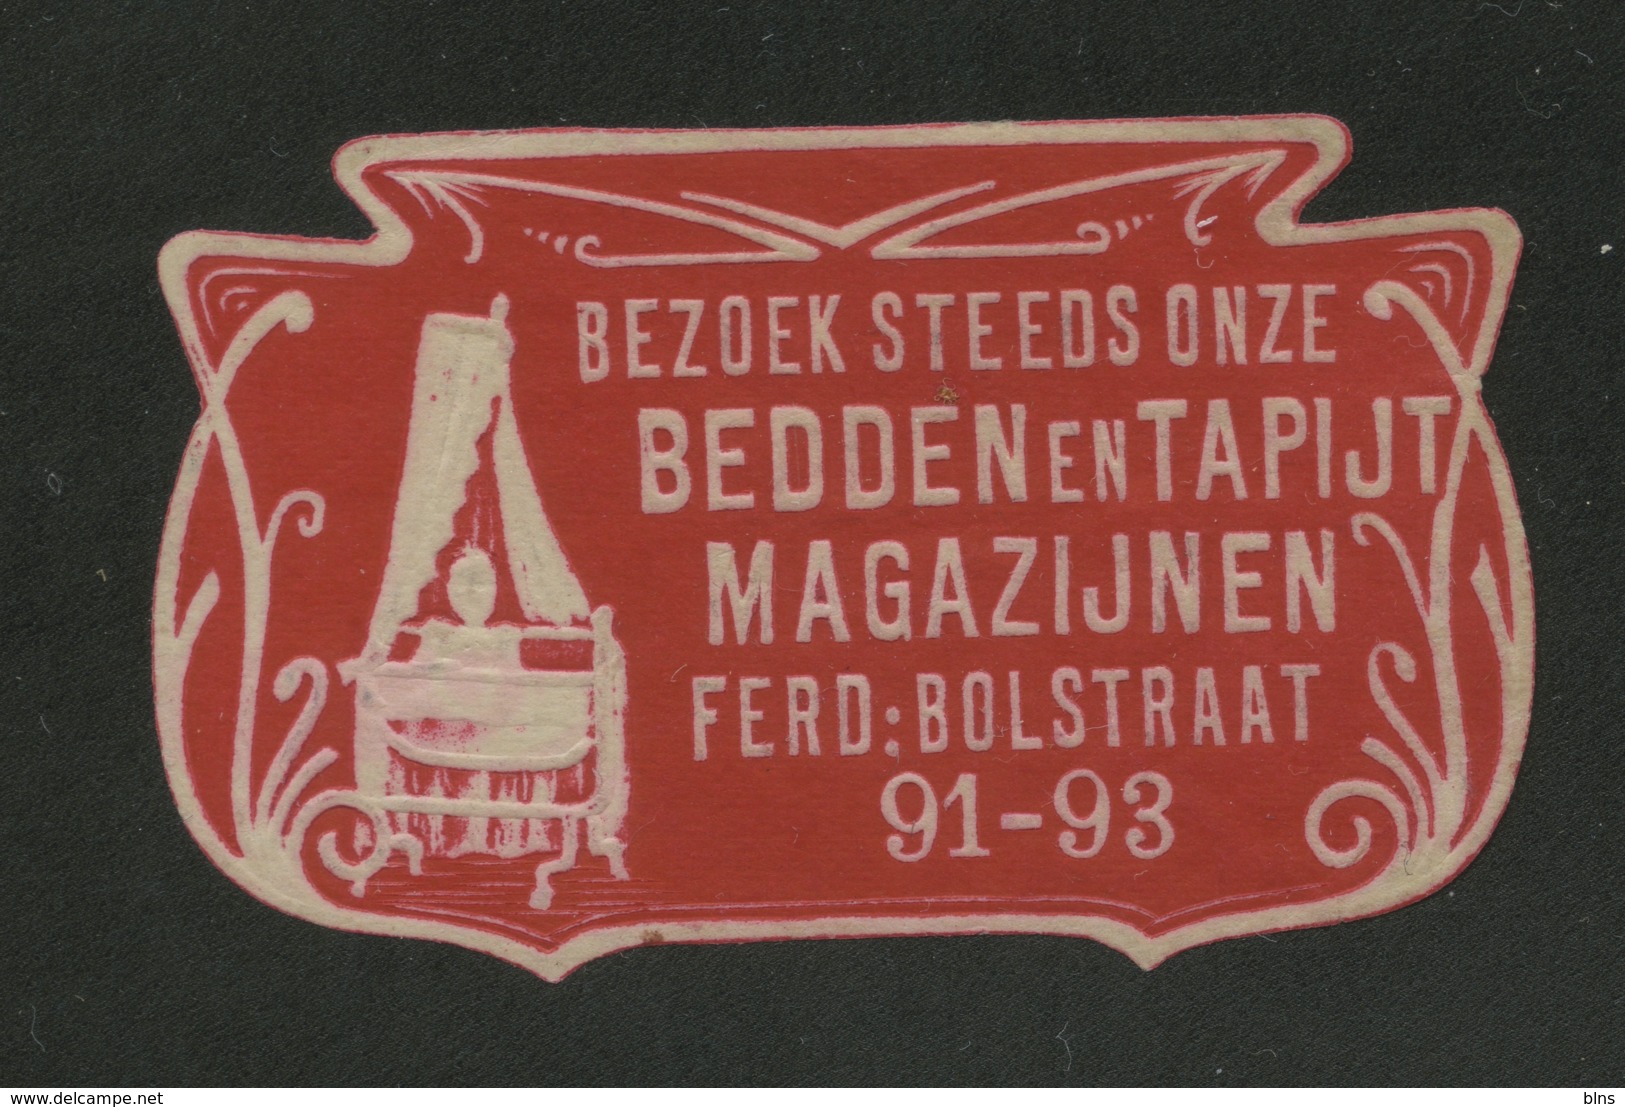 Bezoek Steeds Onze Bedden En Tapijt Magazijnen - Ferd Bolstraat 91-93 - Erinnophilie